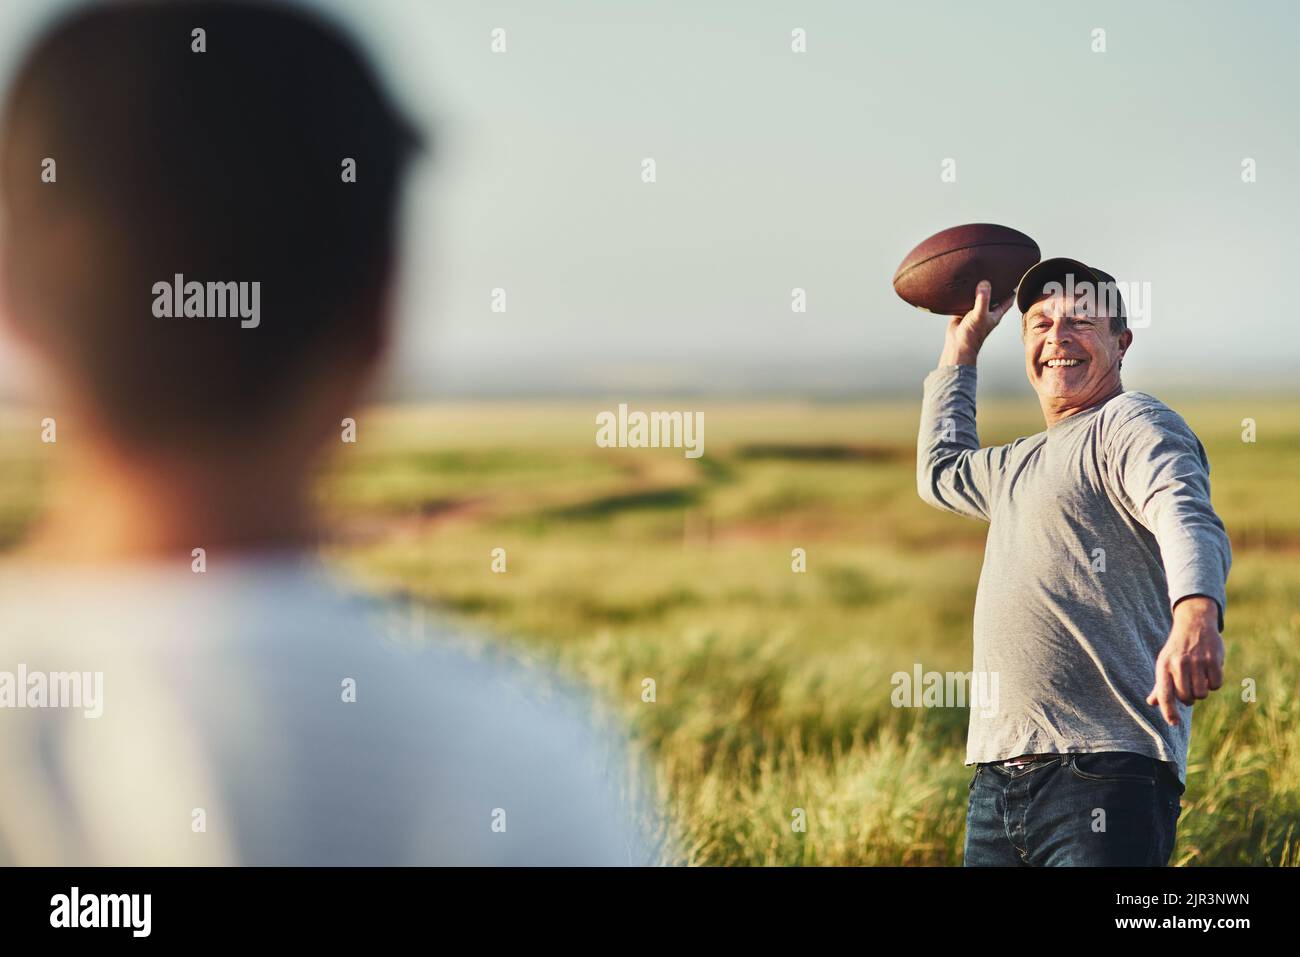 Mal sehen, ob Sie diese auch fangen können. Vater wirft einen Fußball zu seinem Sohn auf einem Feld. Stockfoto